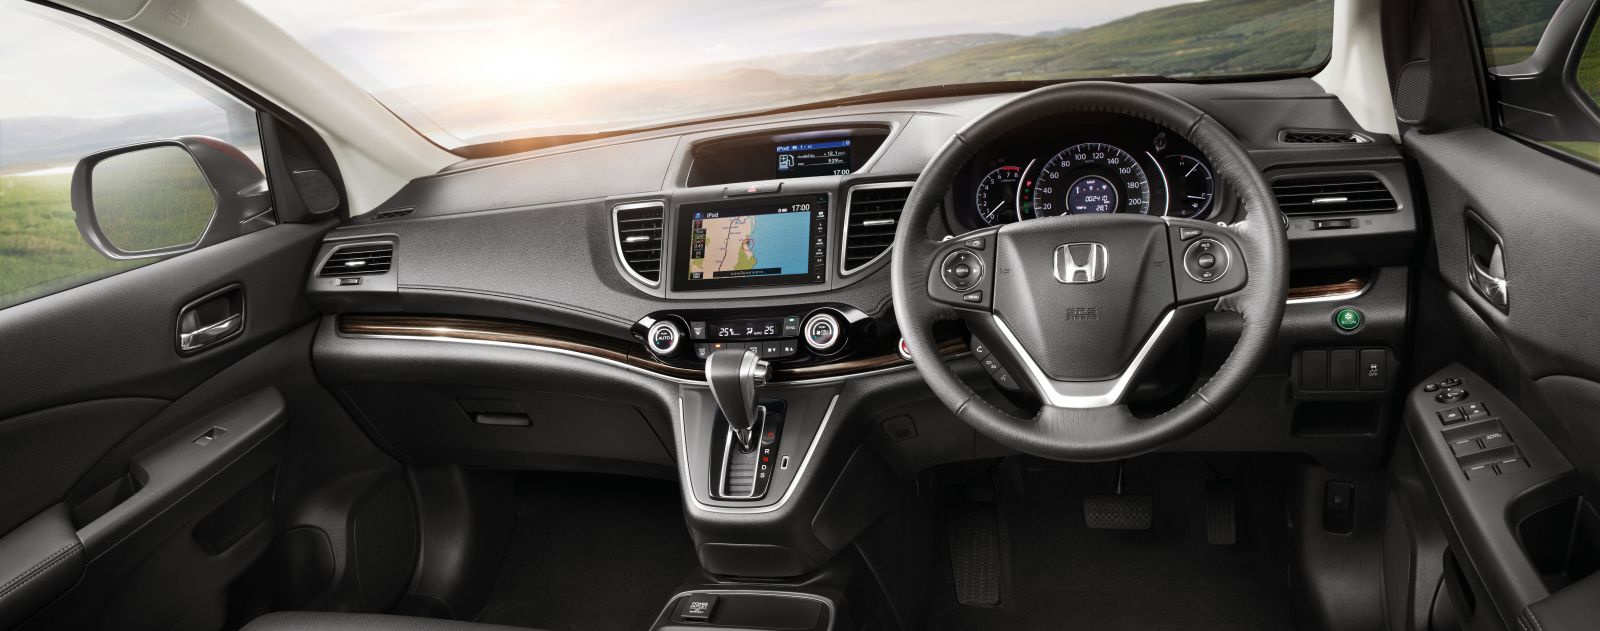 2015 Honda Cr V Facelift Asean Spec Revealed